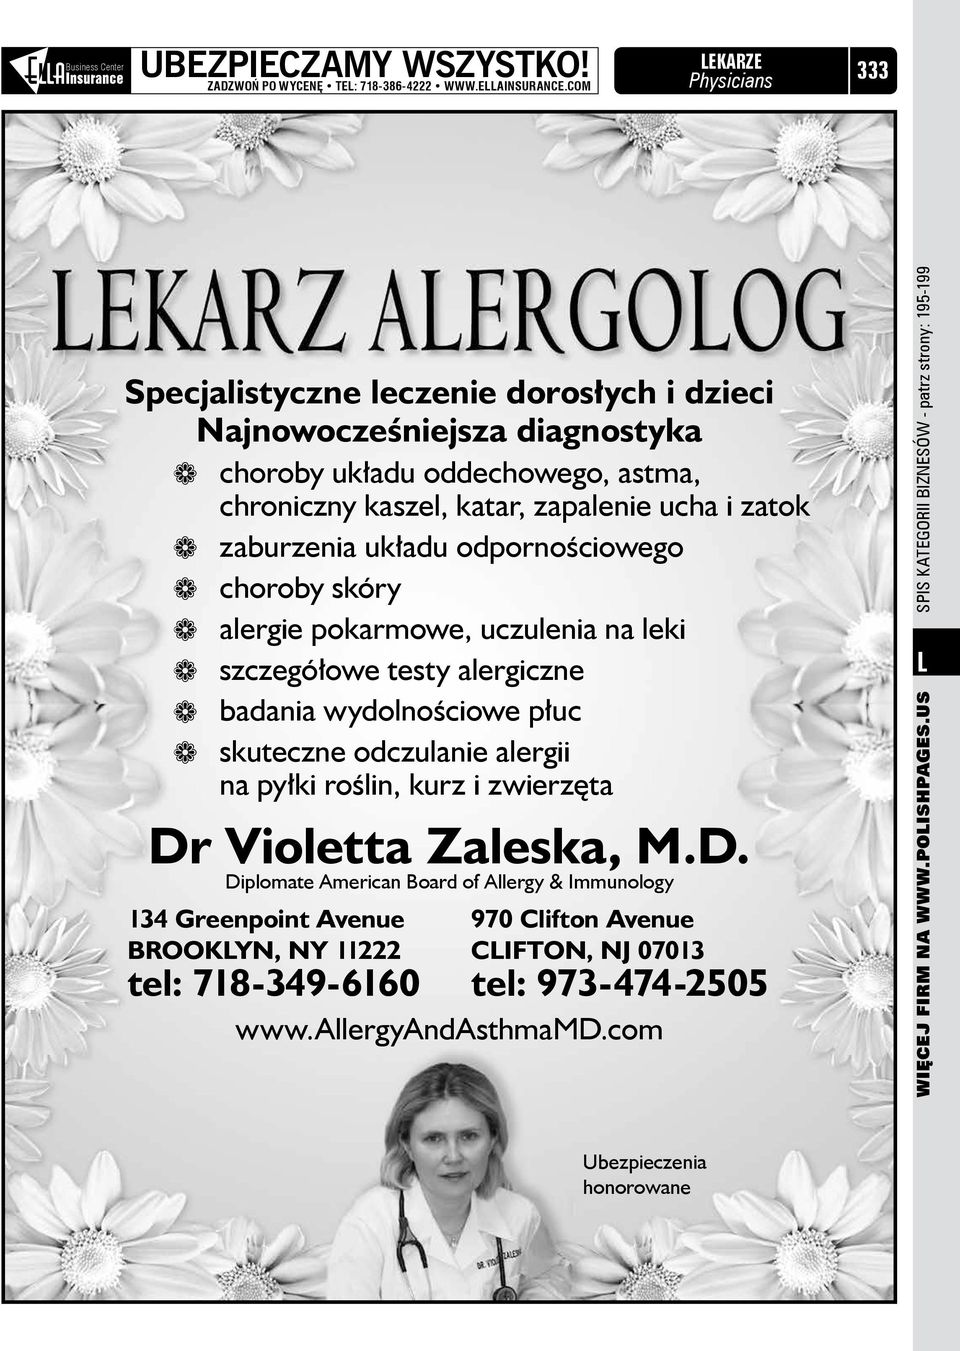 odpornościowego choroby skóry alergie pokarmowe, uczulenia na leki szczegółowe testy alergiczne badania wydolnościowe płuc skuteczne odczulanie alergii na pyłki roślin, kurz i zwierzęta Dr Violetta